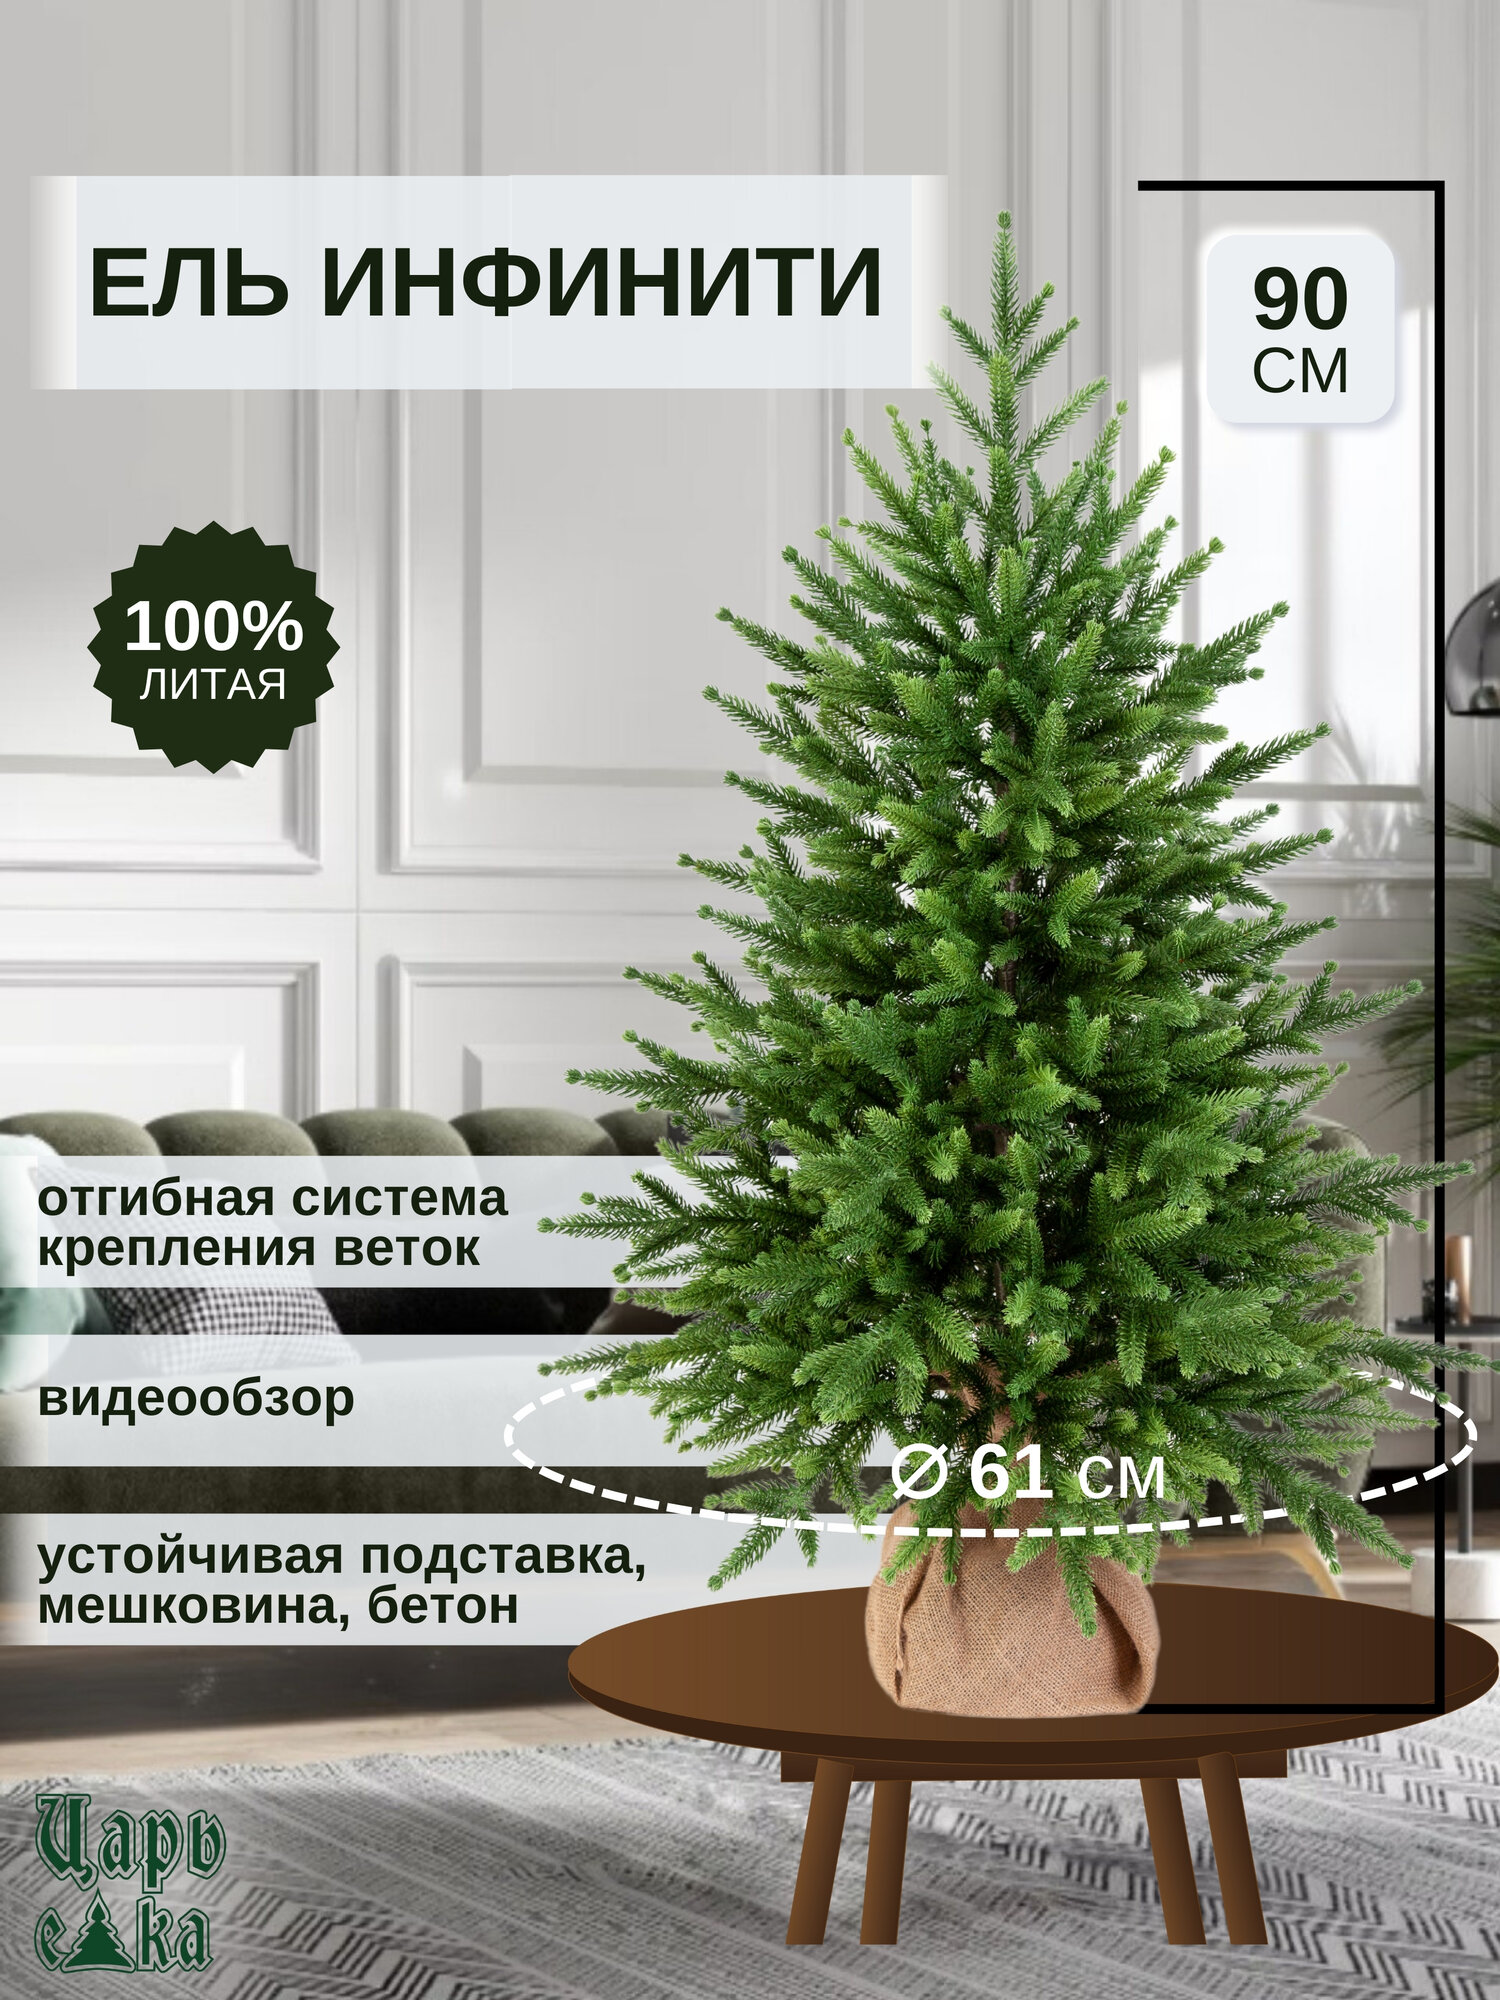 Ель искусственная Царь Елка Инфинити 90см (ИнФ-90), новогодняя настольная елка , литая, премиум.